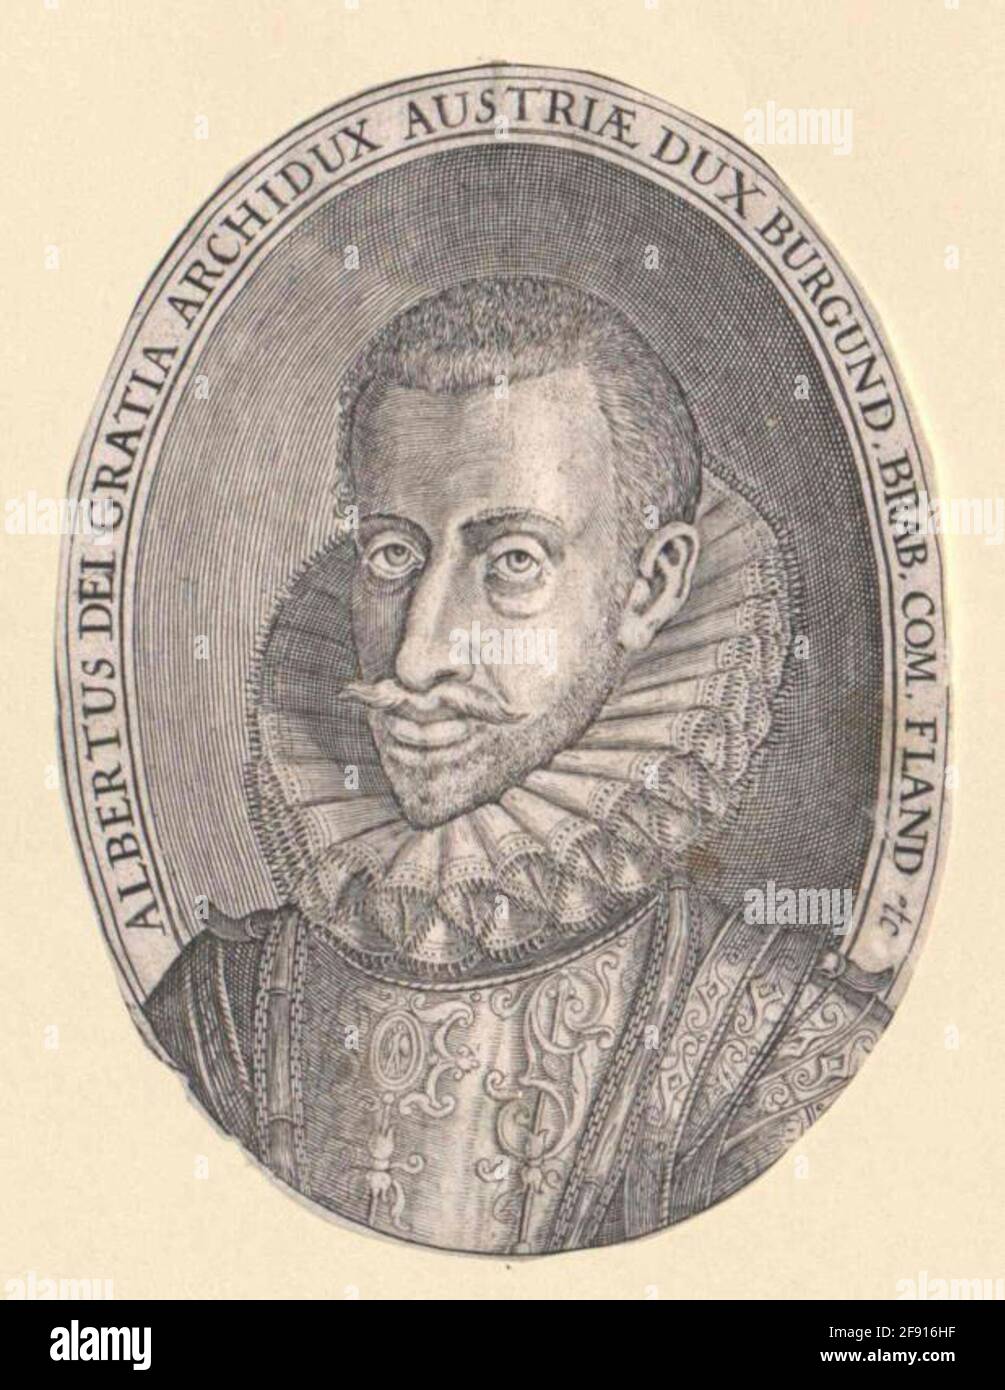 Albrecht VII Der fromme Erzherzog von Österreich. Stockfoto